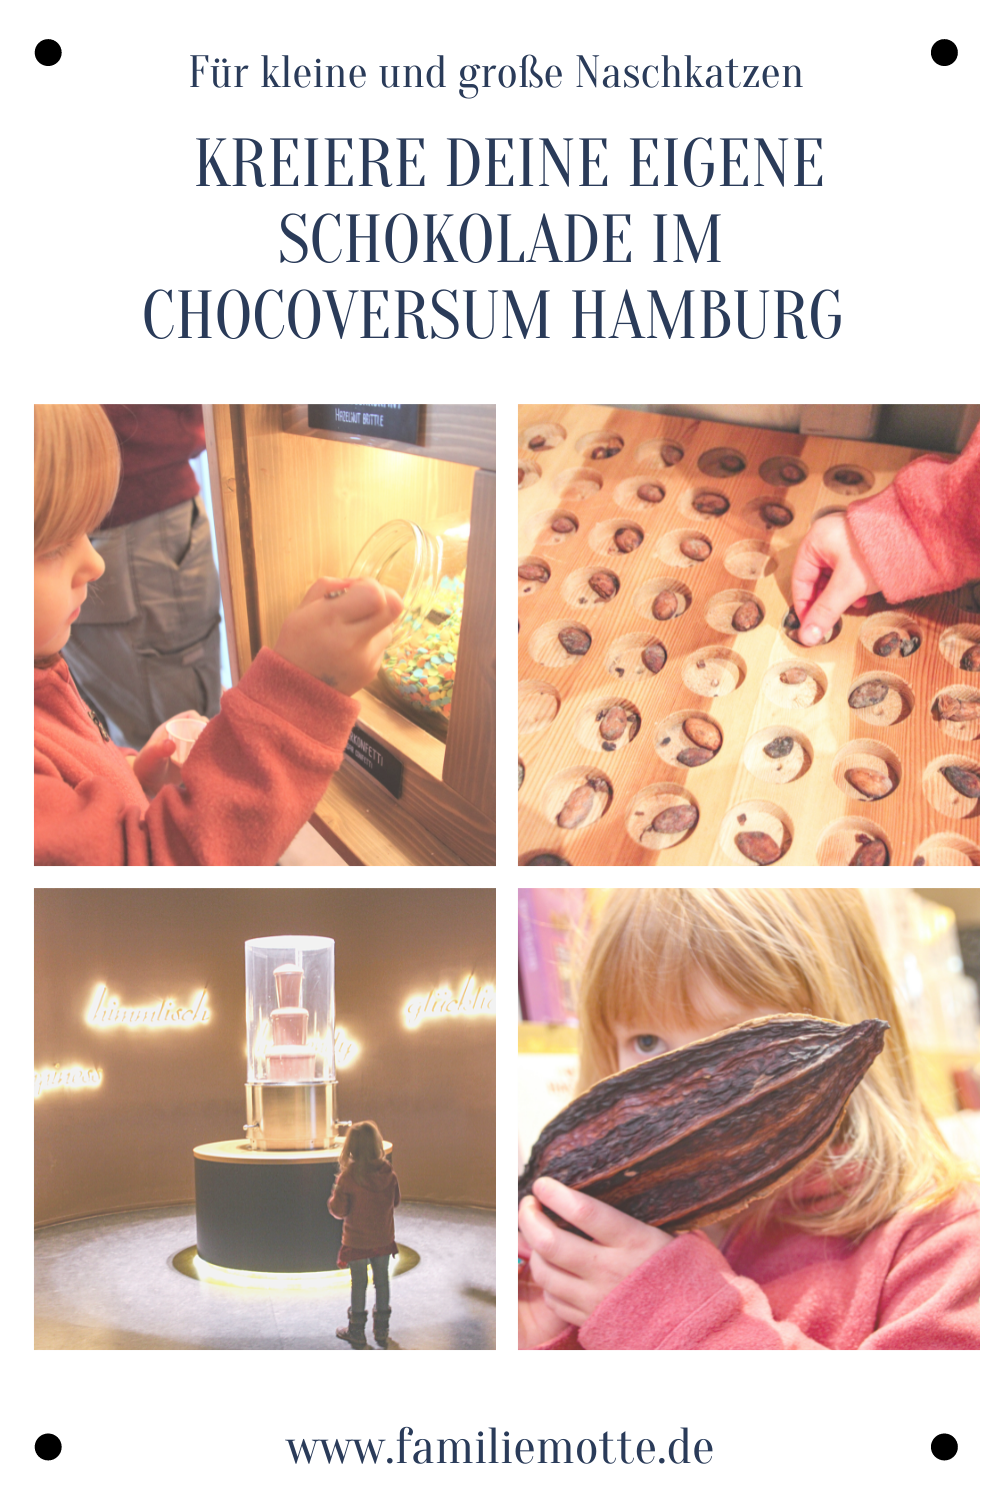 Chocoversum Hamburg